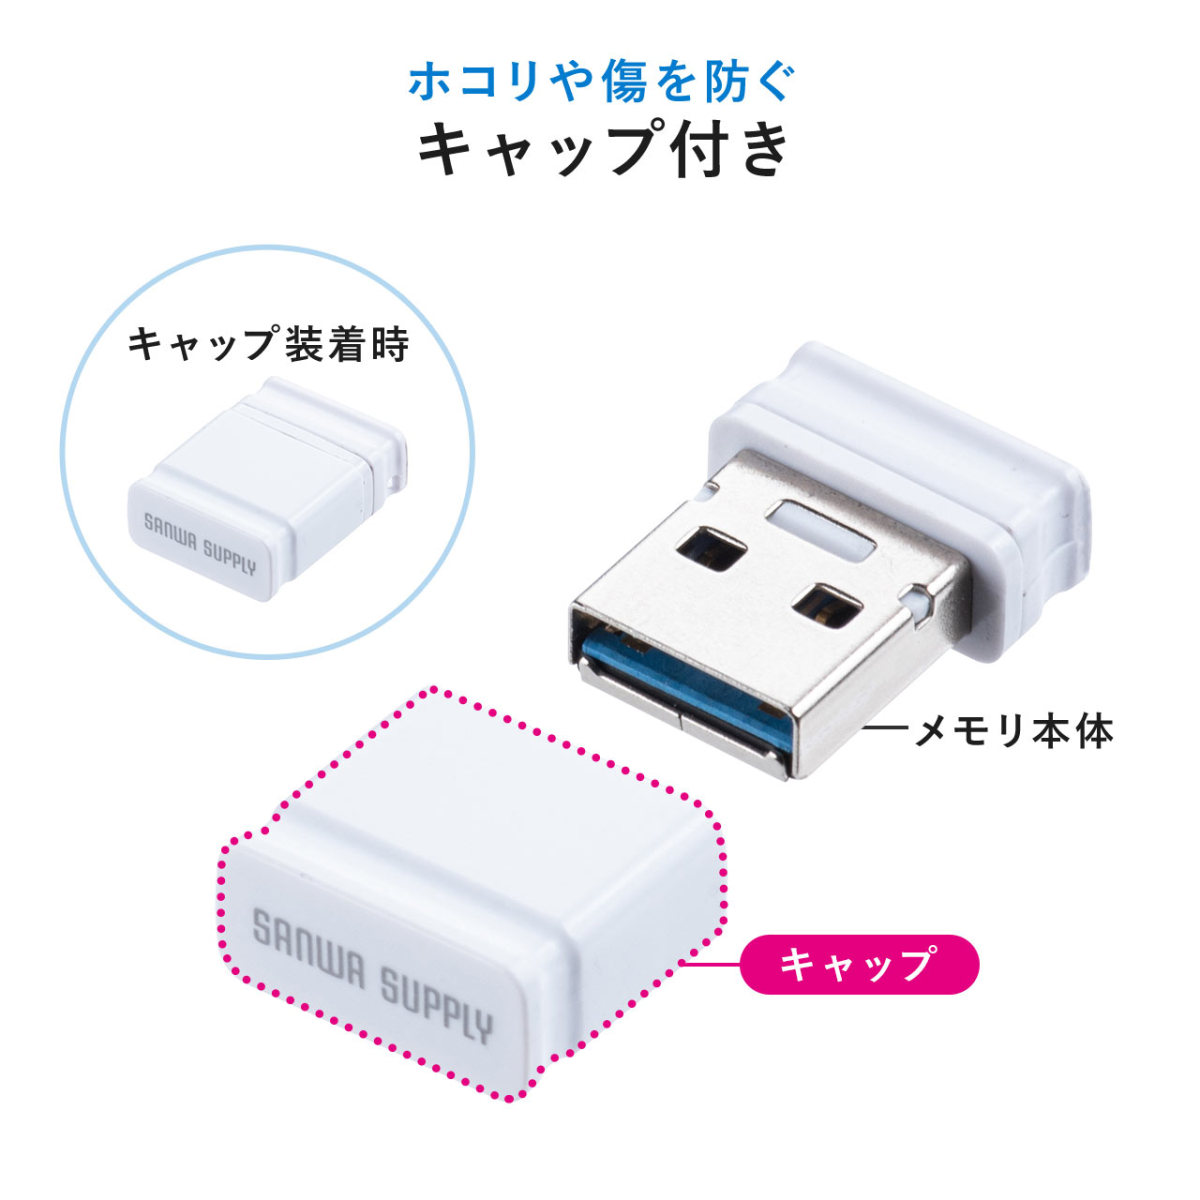 USBメモリ 32GB USB3.2 Gen1 超小型 コンパクト メモリー フラッシュ ドライブ メモリスティック 高速データ転送 キャップ式 600-3UP32GW